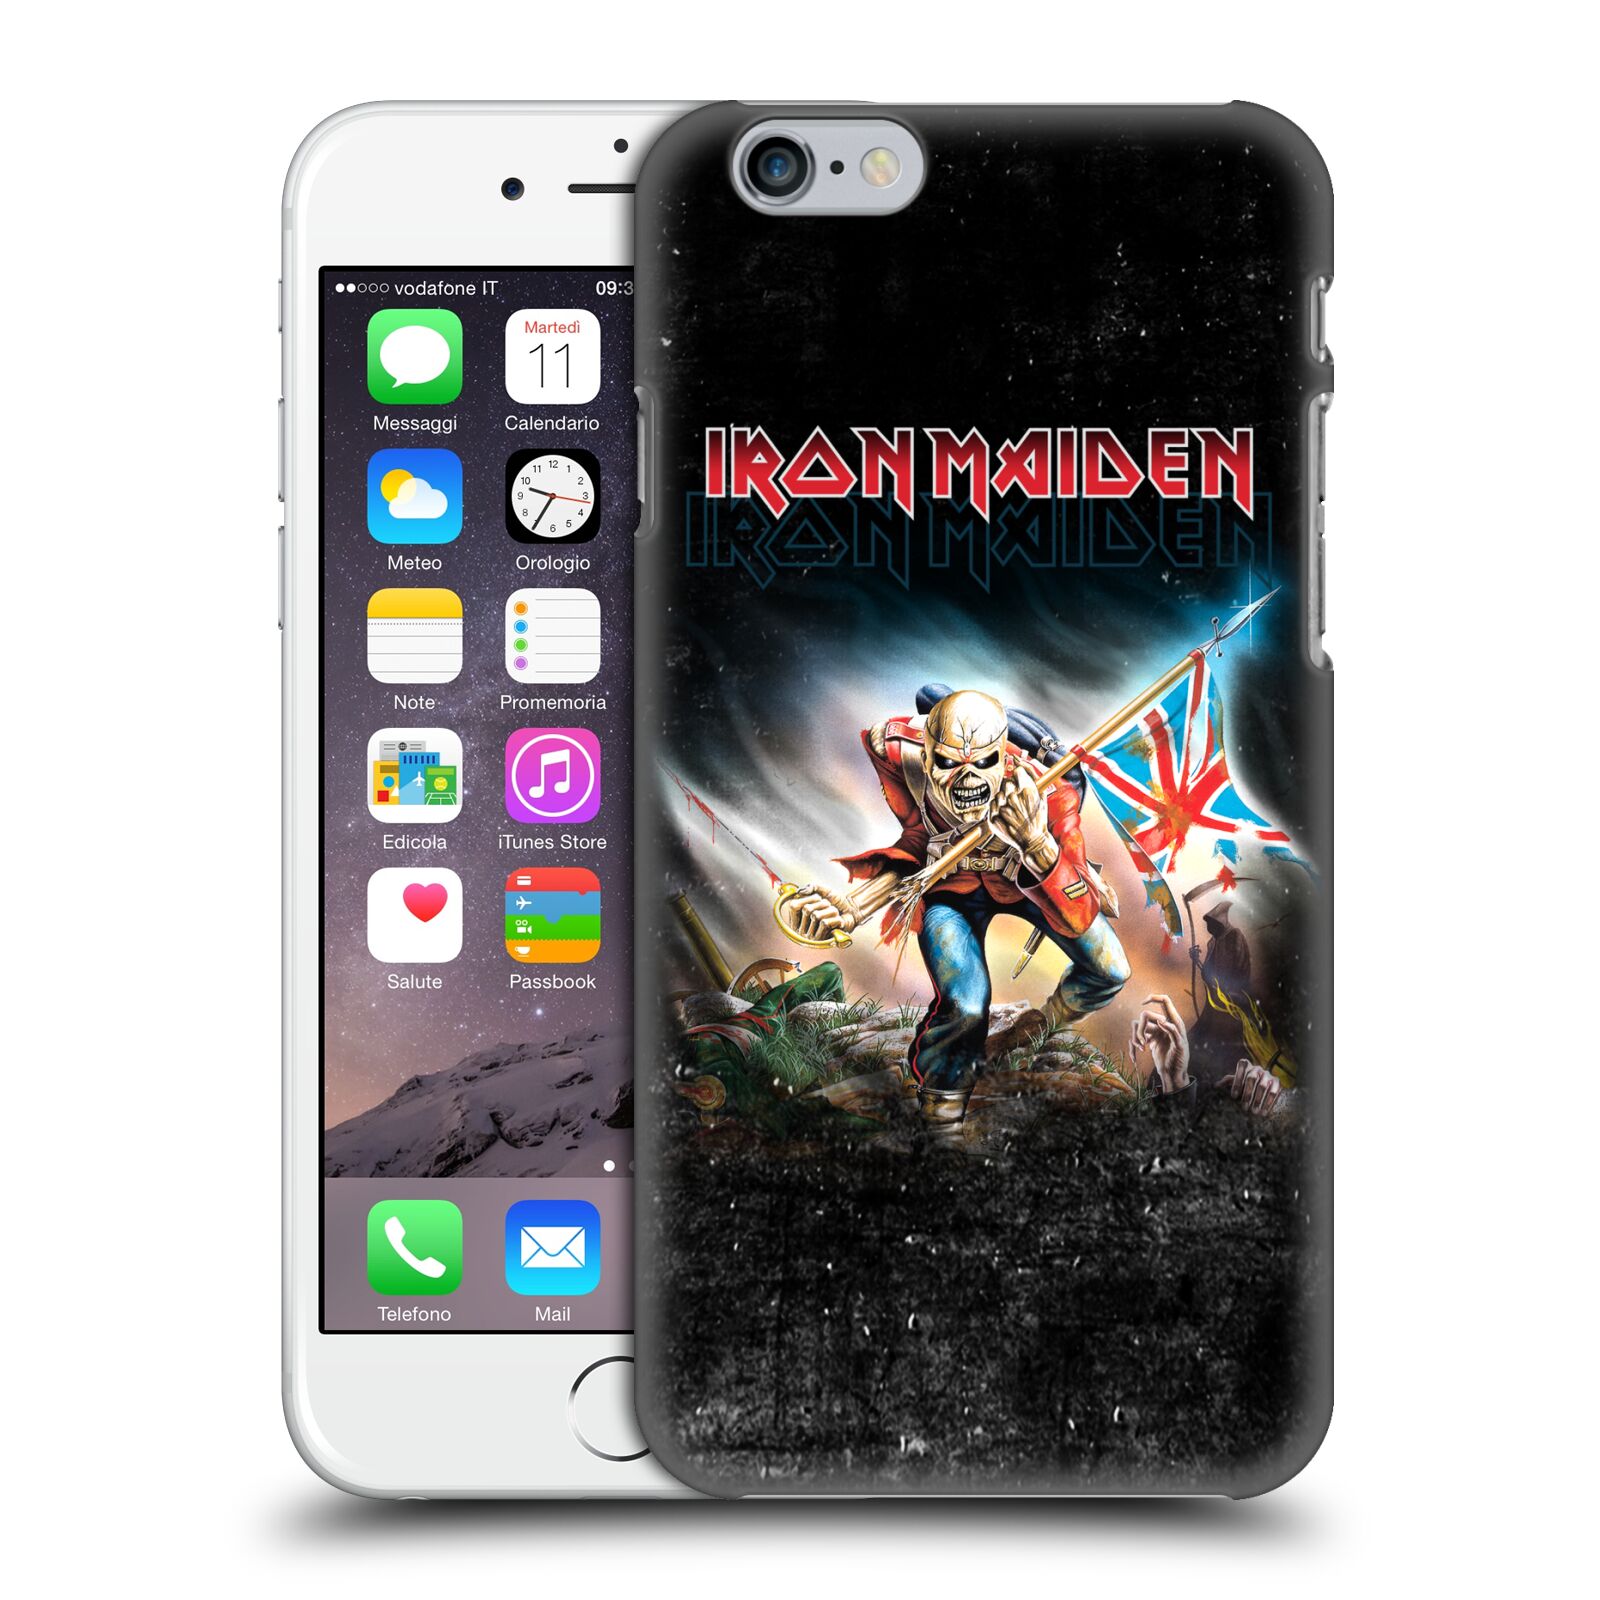 Plastové pouzdro na mobil Apple iPhone 6 HEAD CASE - Iron Maiden - Trooper 2016 (Plastový kryt či obal na mobilní telefon s licencovaným motivem Iron Maiden Apple iPhone 6)